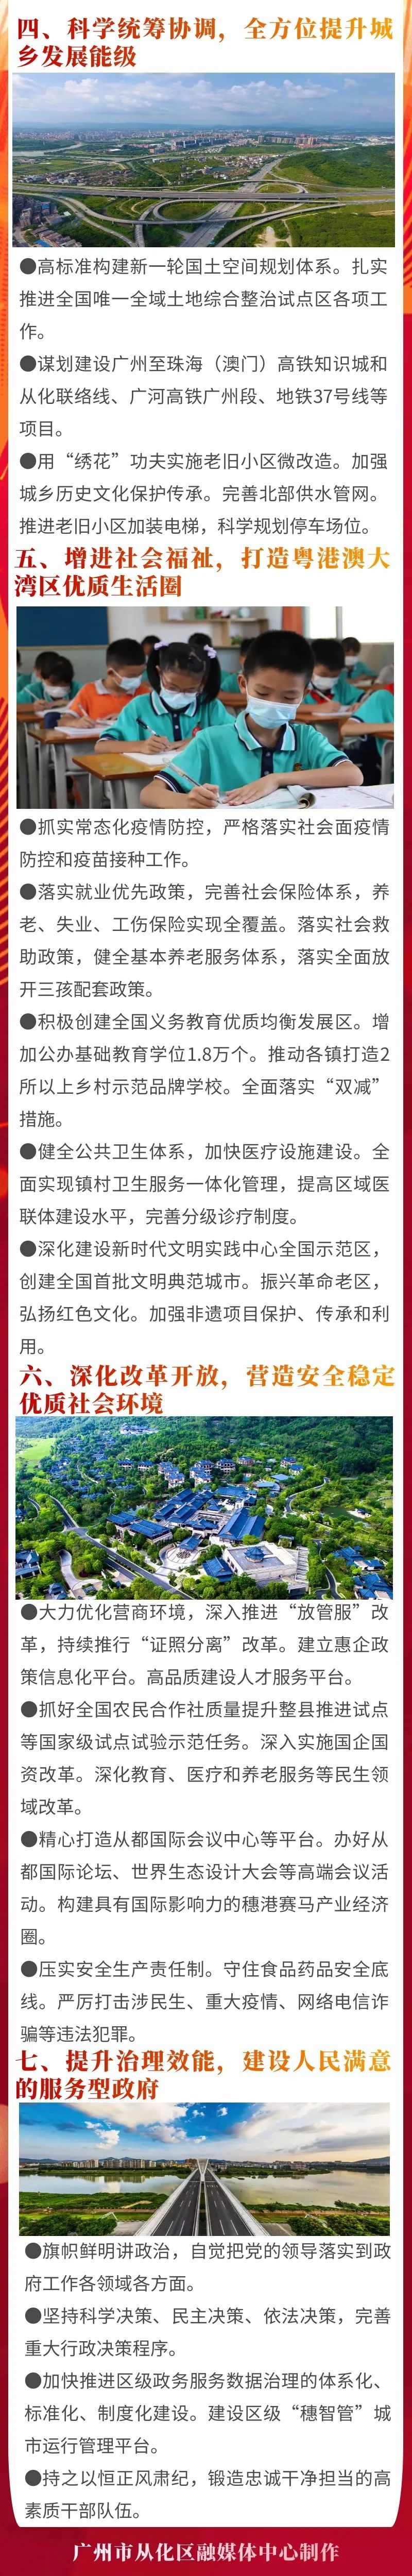 一图读懂2021年广州市从化区工作